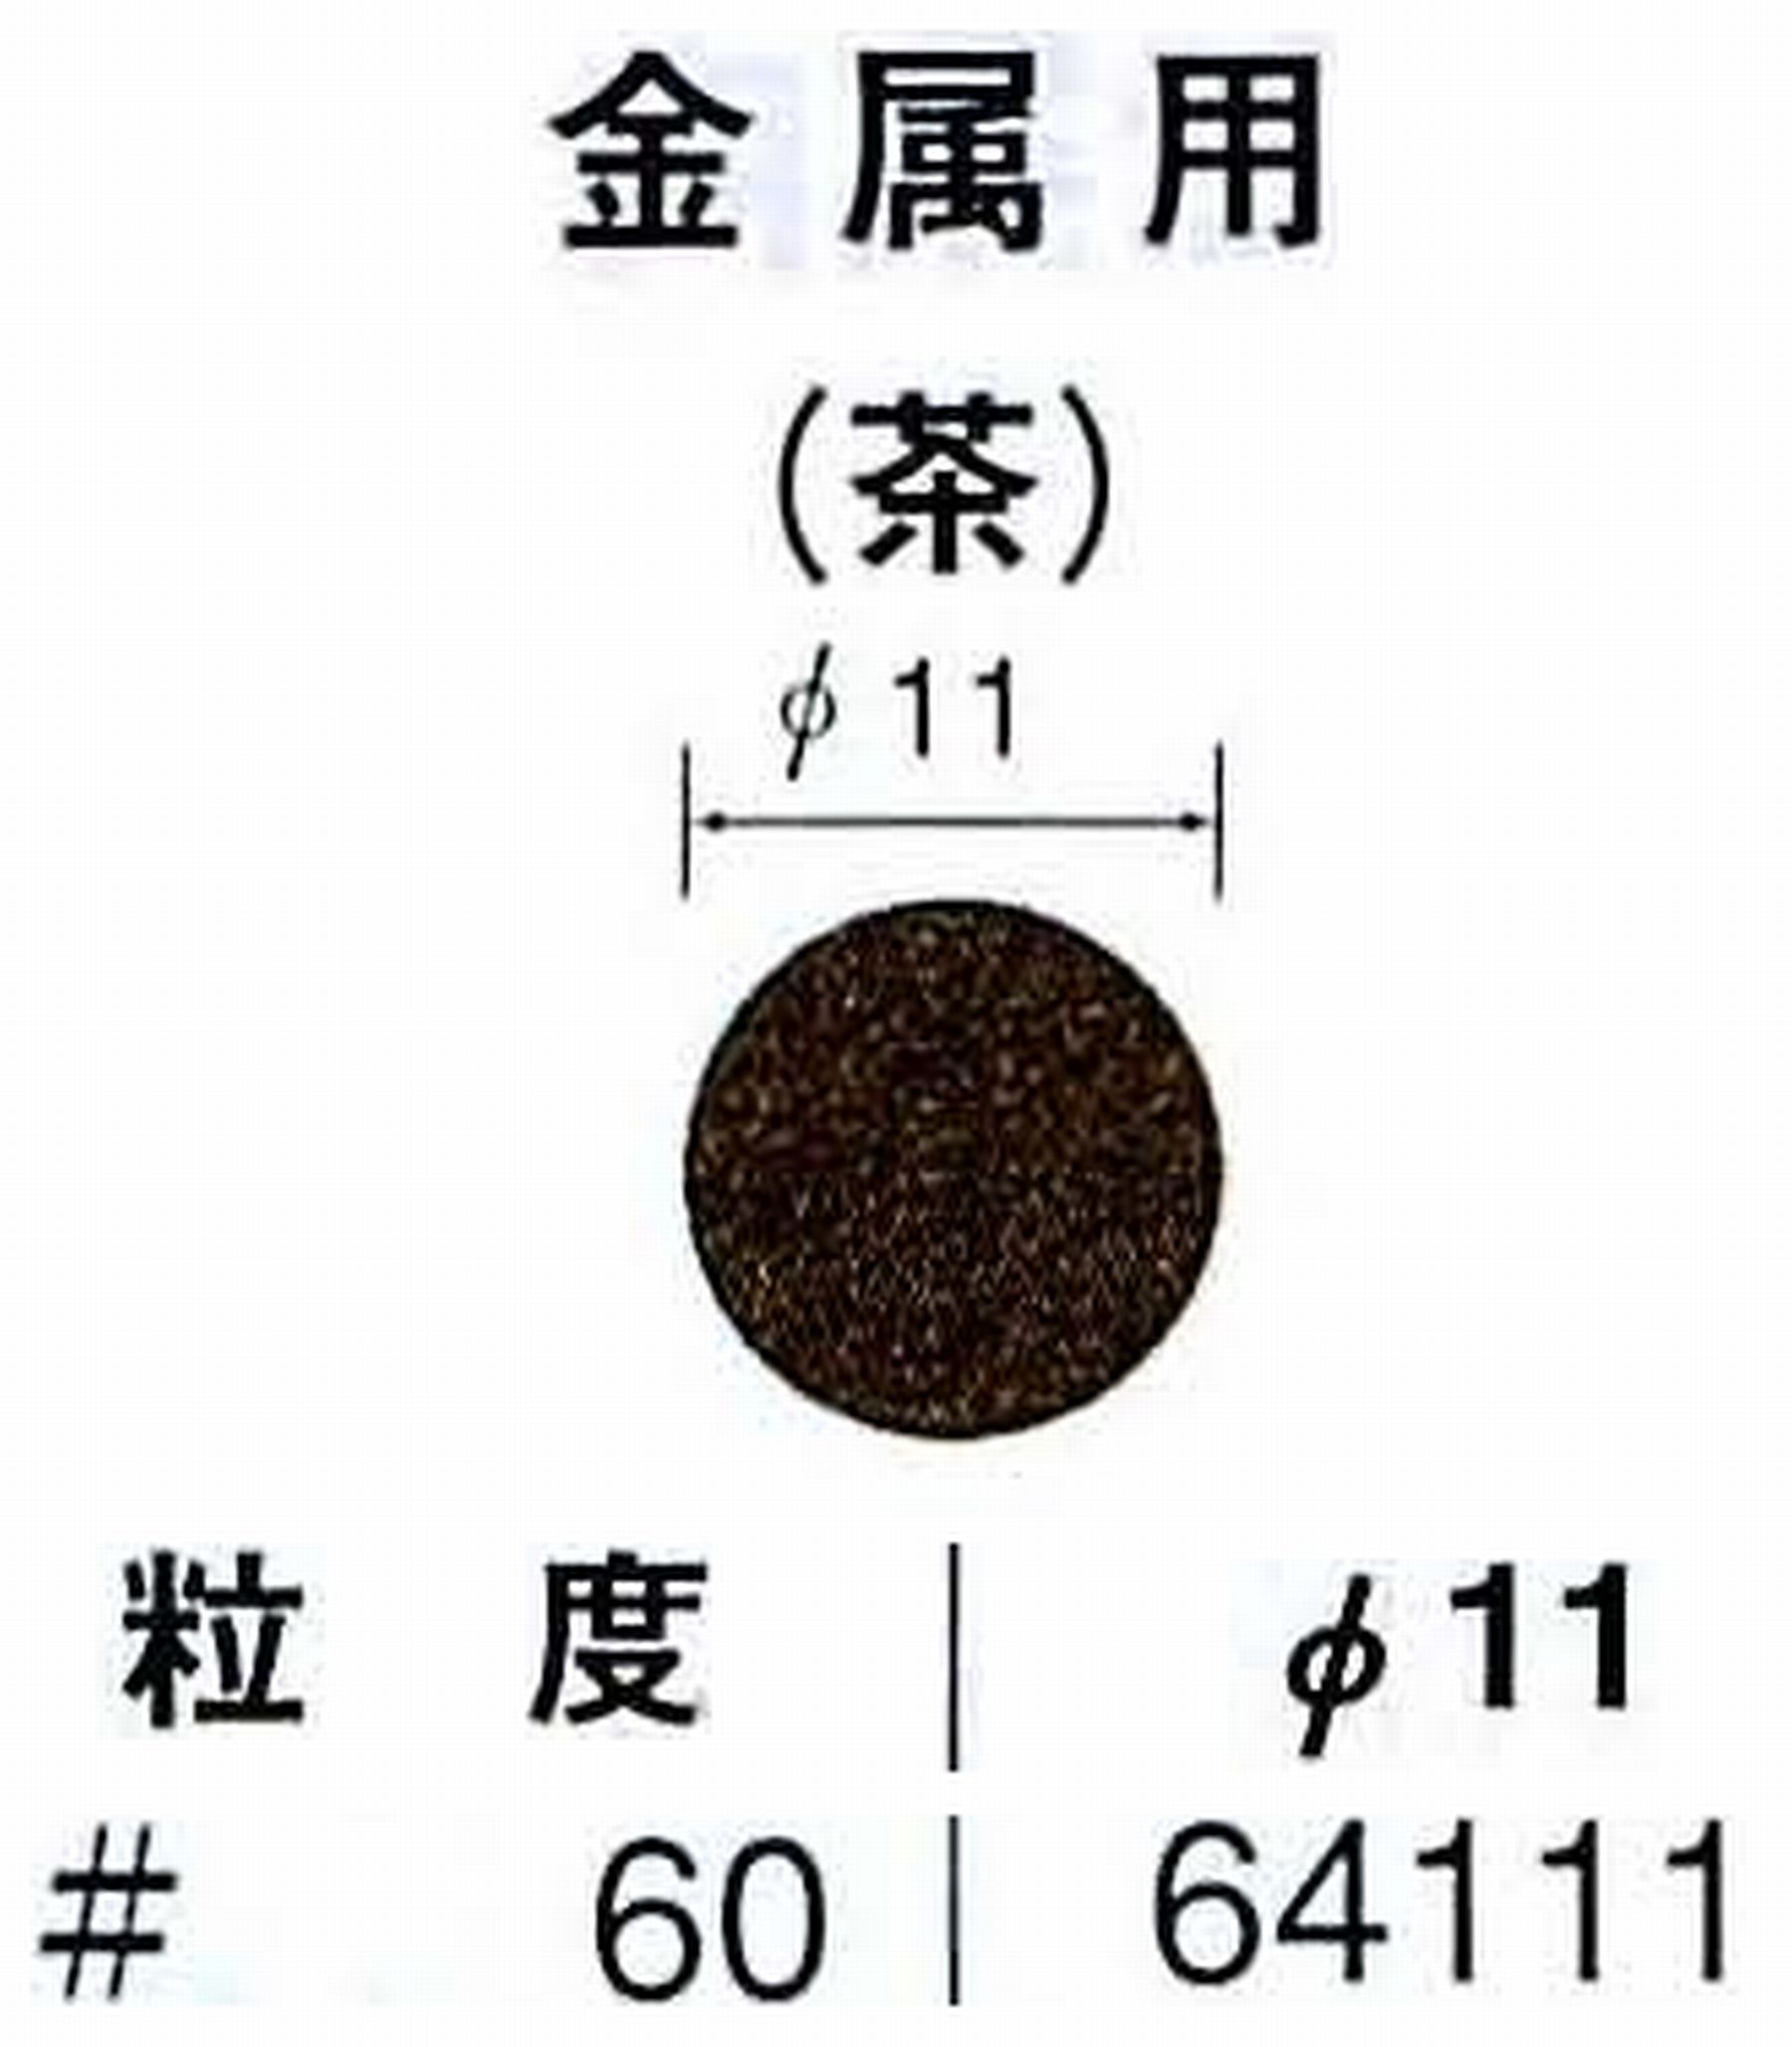 ナカニシ/NAKANISHI アングルグラインダ(電動・エアー) アングルアタッチメント専用工具 サンドペーパーディスク(布基材タイプ)裏面のり処理 64111